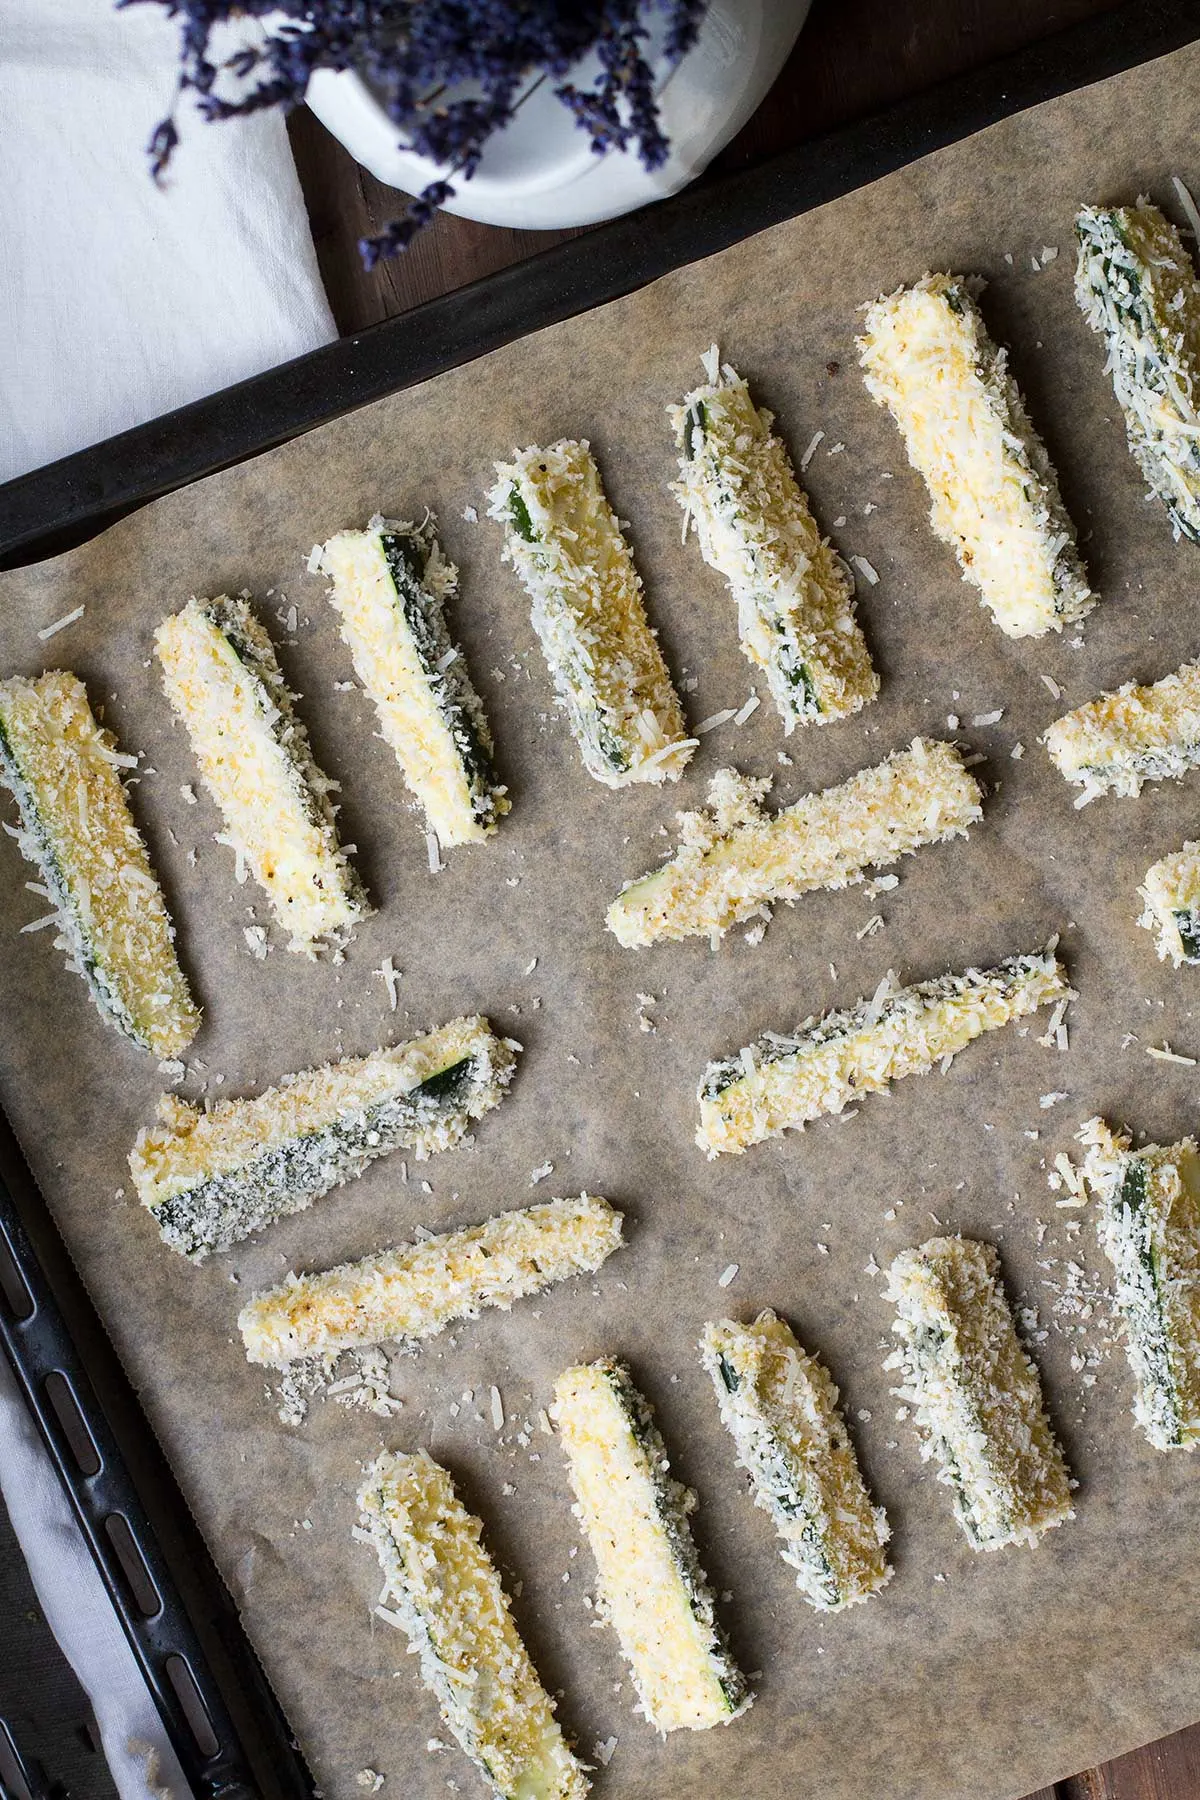 Zucchini sticks on a baking tray.